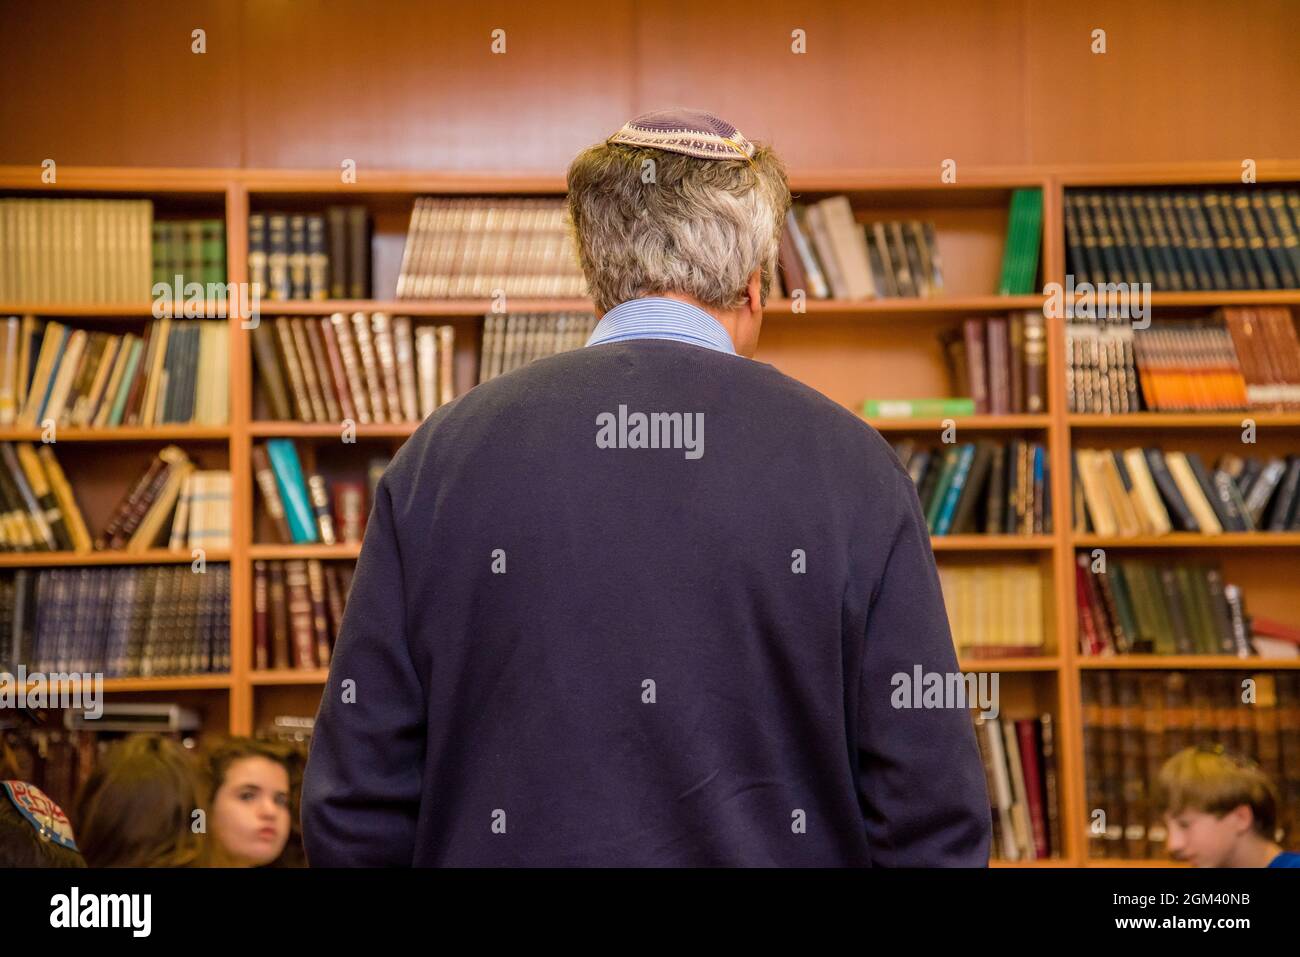 Jüdischer Mann mit grauen Haaren, der eine Yarmulke von hinten in einer Bücherregal-Bibliothek trug. Stockfoto